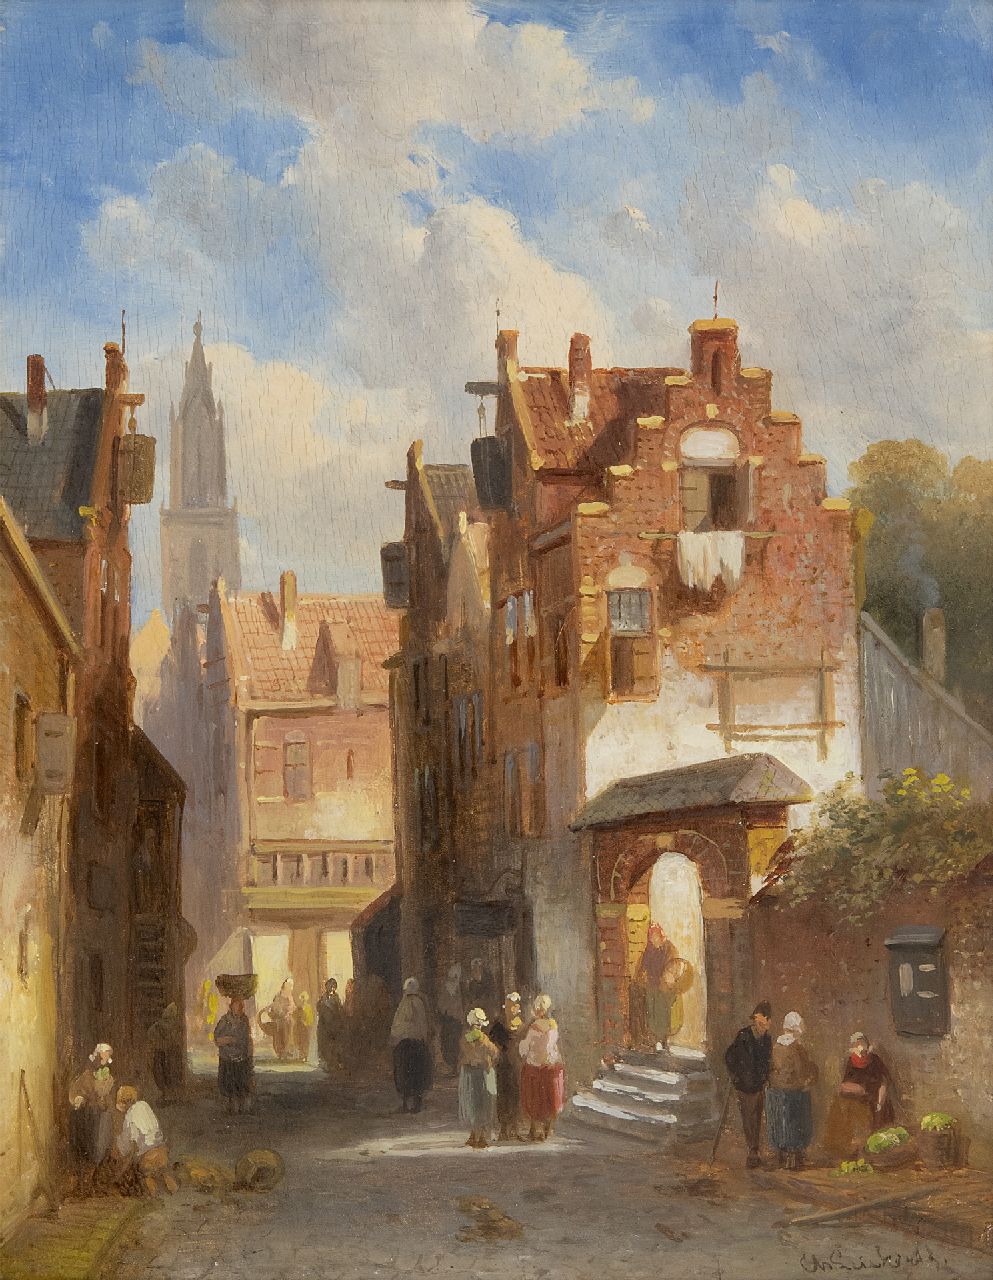 Leickert C.H.J.  | 'Charles' Henri Joseph Leickert | Schilderijen te koop aangeboden | Marktdag in een Hollands stadje, olieverf op paneel 27,0 x 21,2 cm, gesigneerd rechtsonder